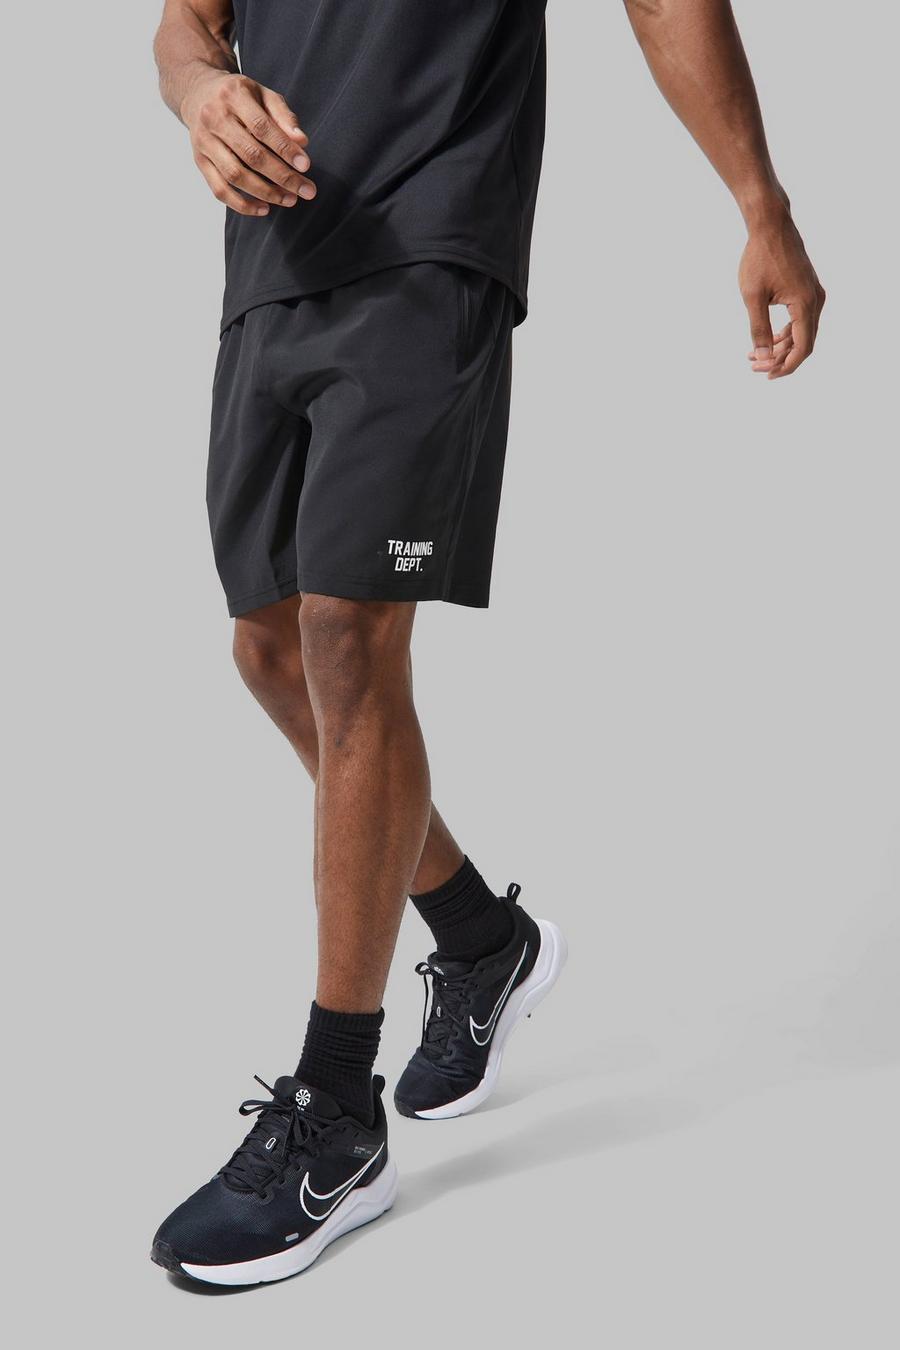 Pantalón corto MAN Active resistente Training Dept, Black